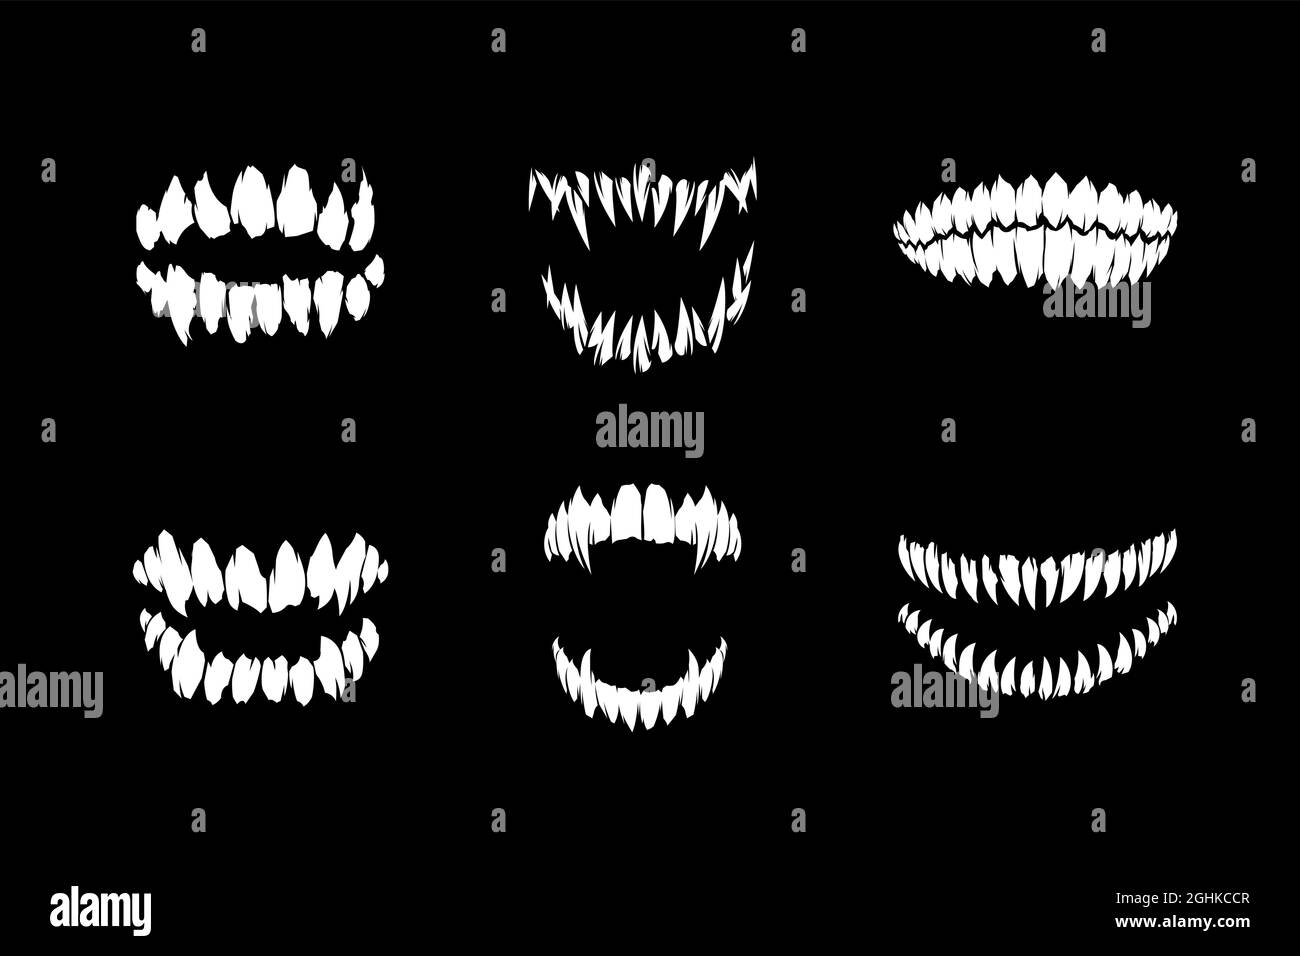 Horror mostro e vampiro o zombie fangs denti silhouette collezione di illustrazione vettoriale isolato su sfondo nero Illustrazione Vettoriale